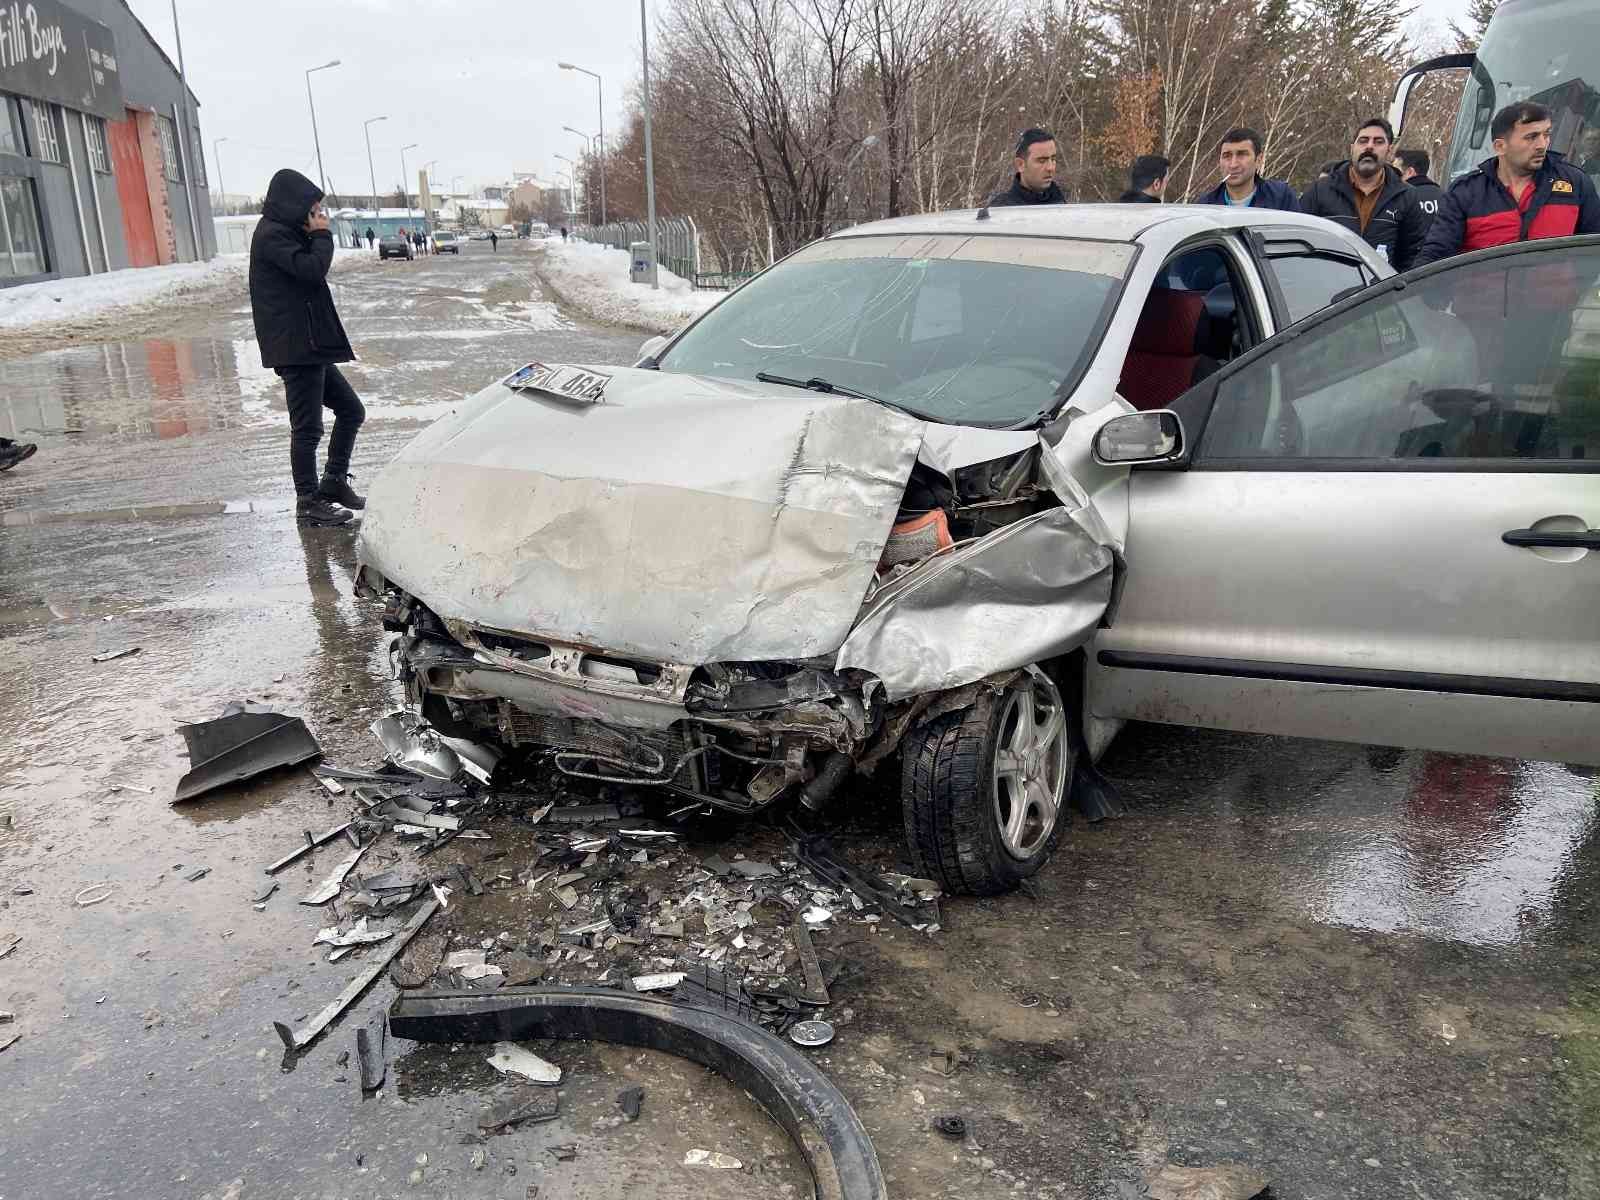 Ağrı’da hasta taşıyan araç kaza yaptı: 2 yaralı #agri